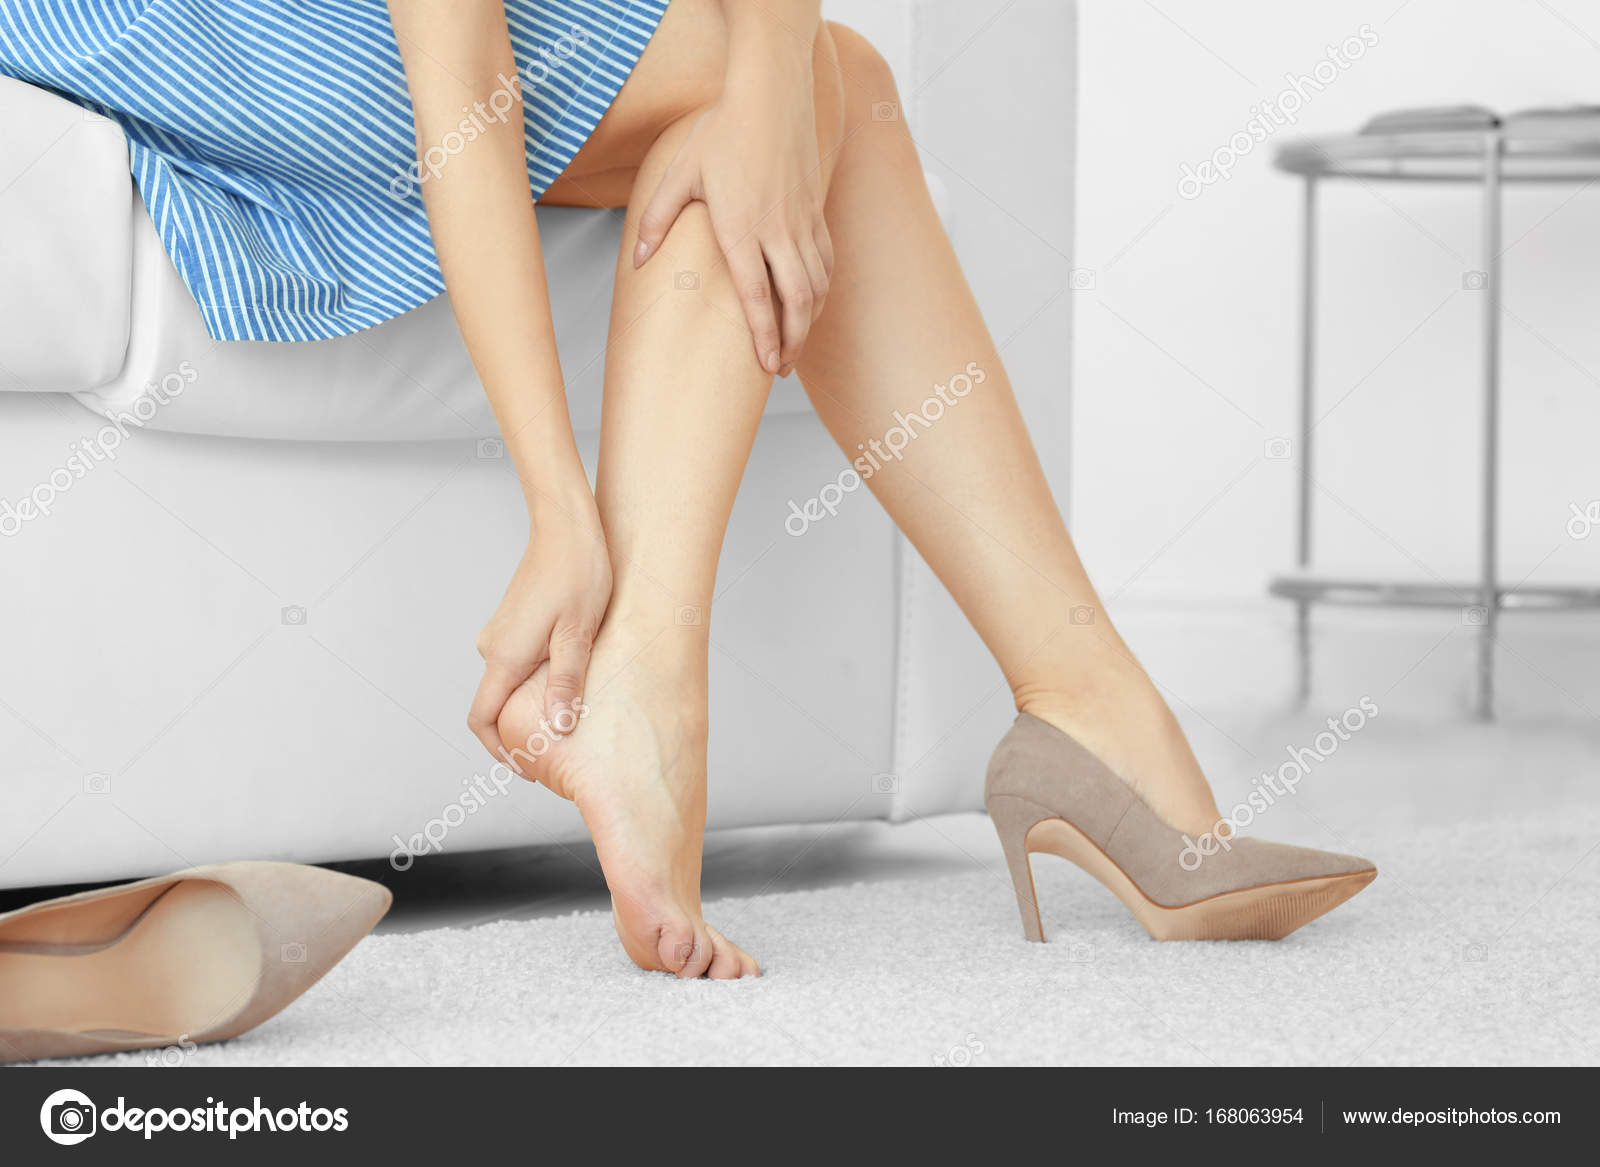 Скучающая нога. Усталость ног. Уставшие ноги. Неудобная обувь. Усталые женские ножки.